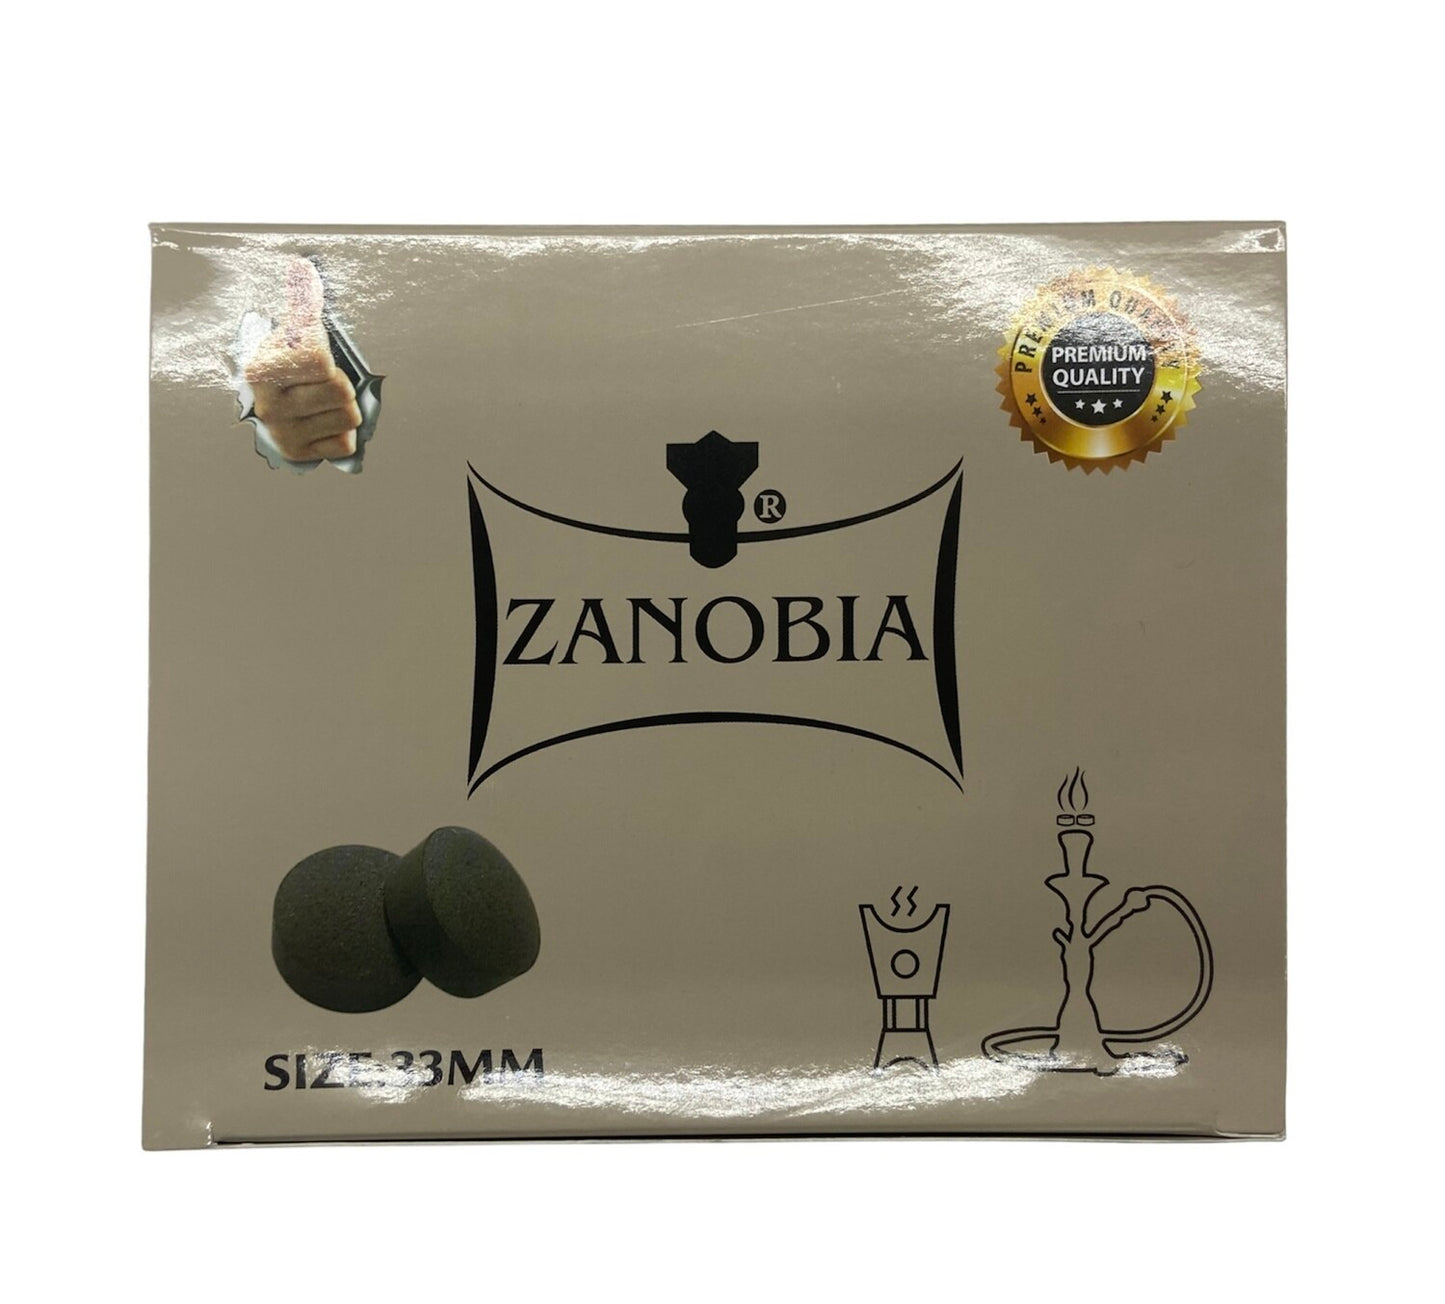 Zanobia Quick Lighting Charcoals